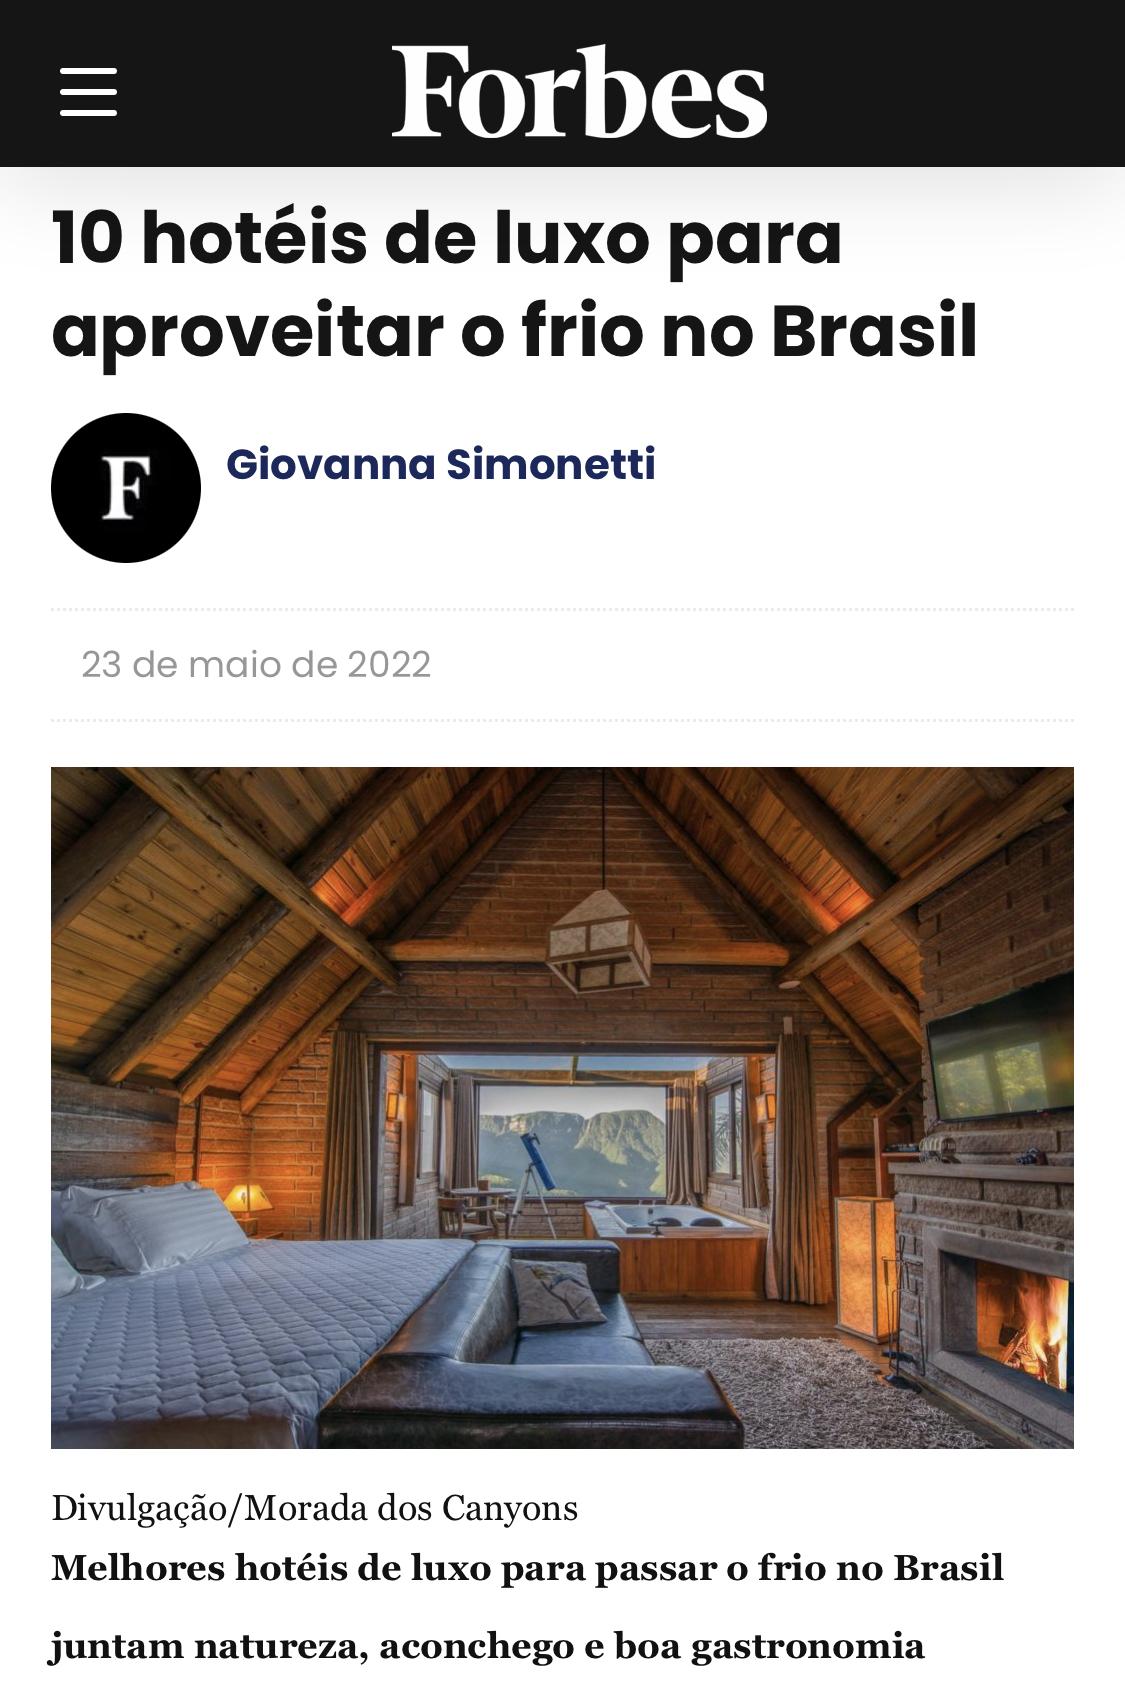 10 hotéis de luxo para aproveitar o frio no Brasil por Giovanna Simonetti da Revista Forbes.